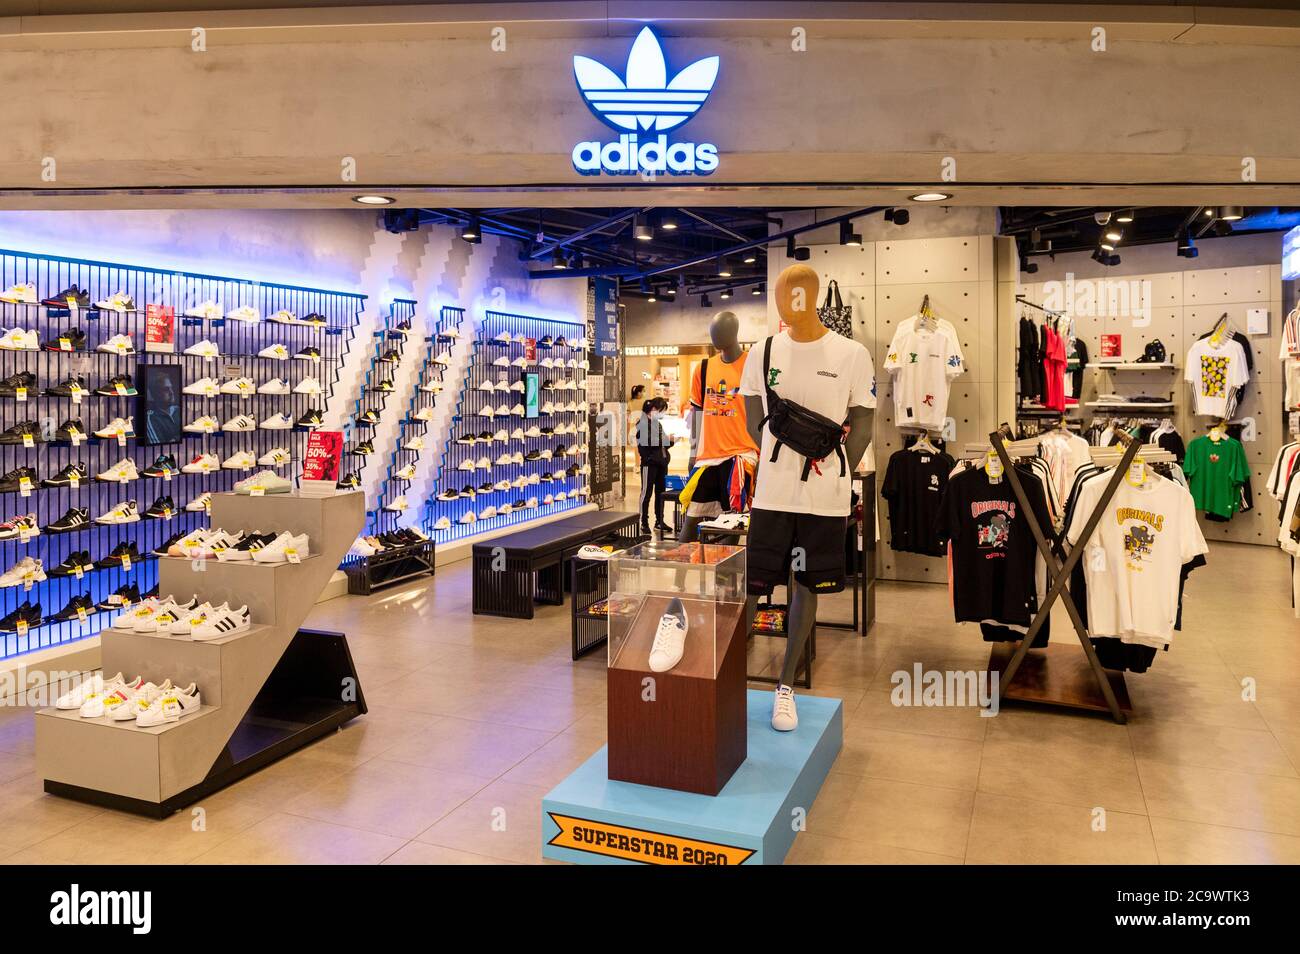 Marca alemana multinacional de ropa tienda Adidas vista en Hong Fotografía de stock -